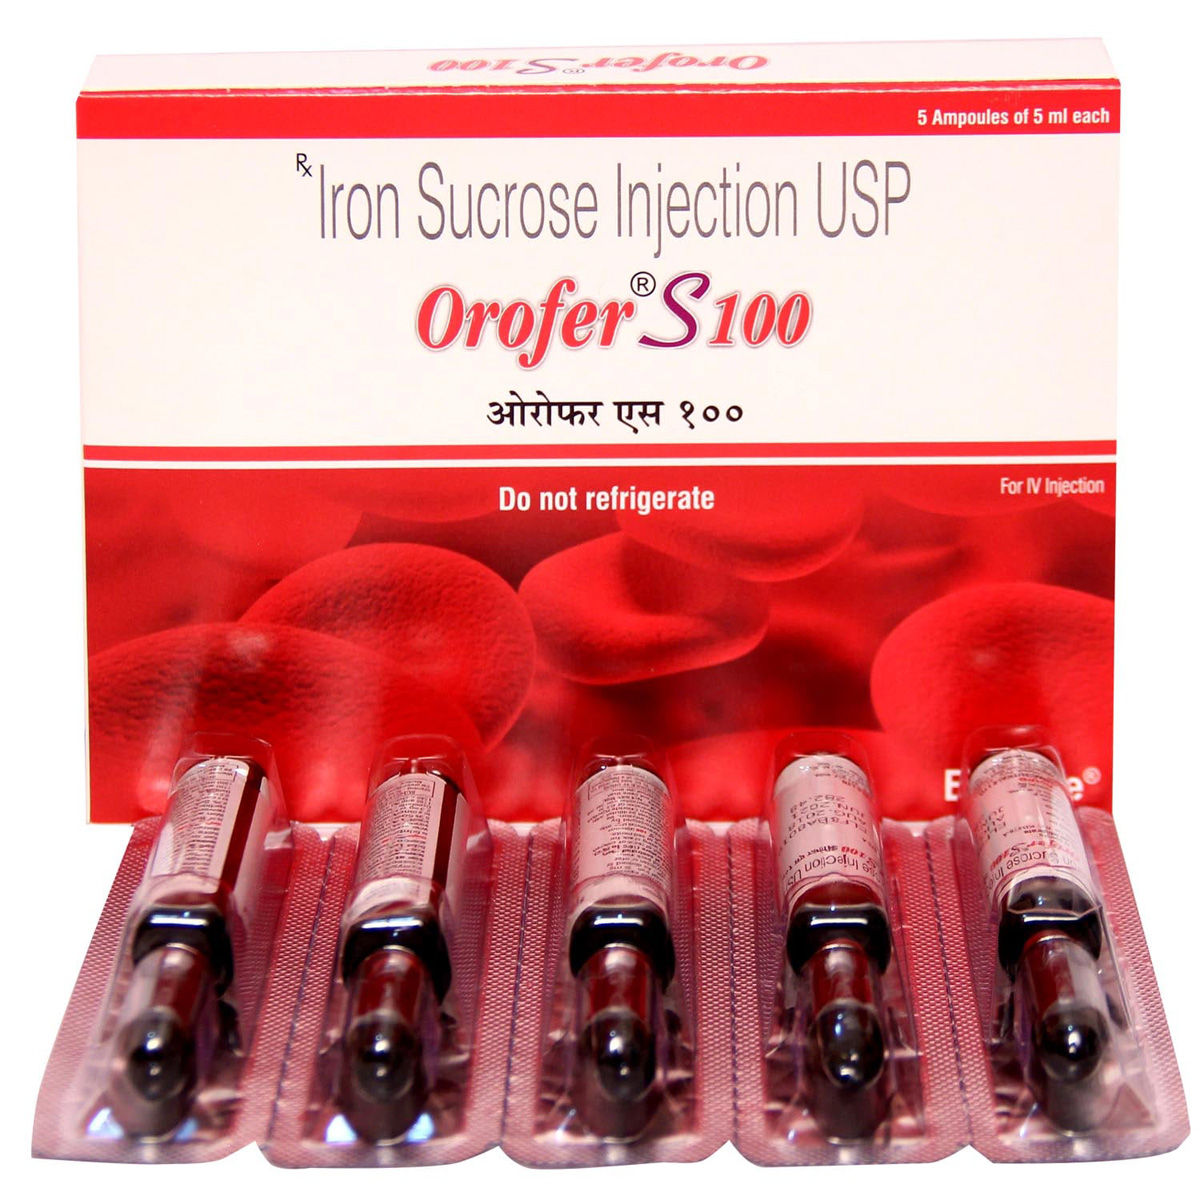 Buy Orofer S 100 Injection 5 ml Online